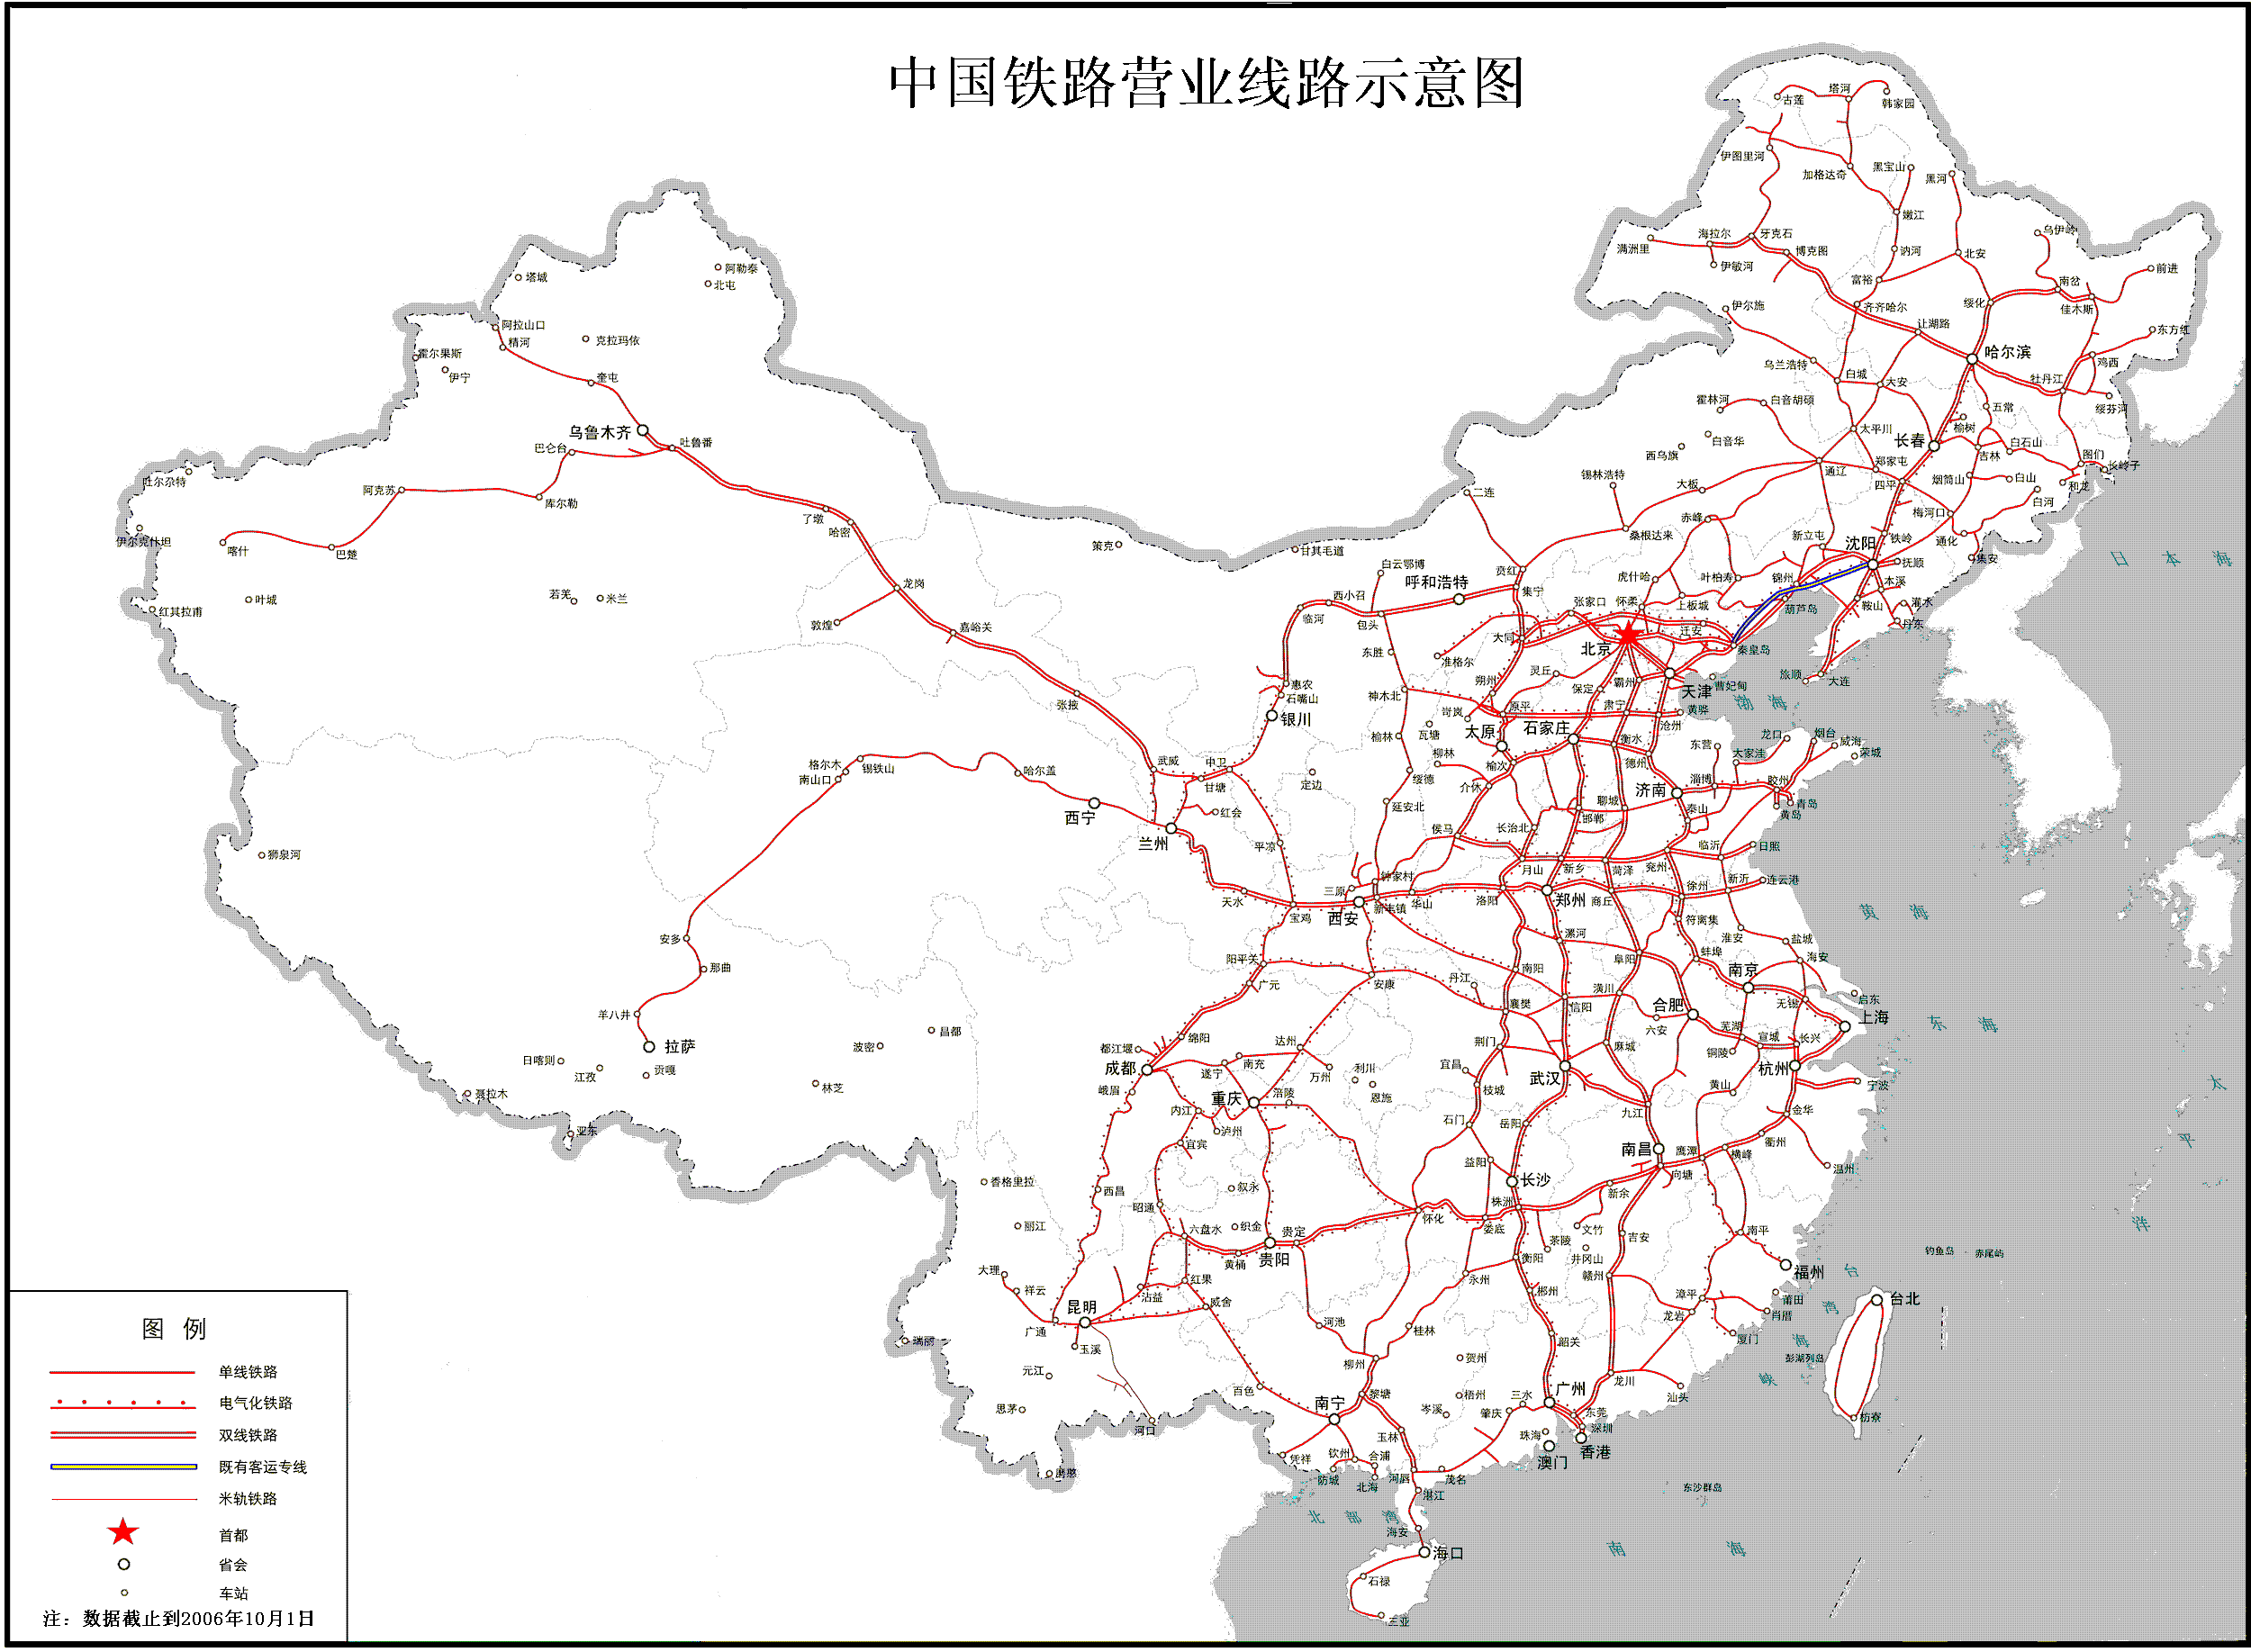 中国铁路营业线路示意图